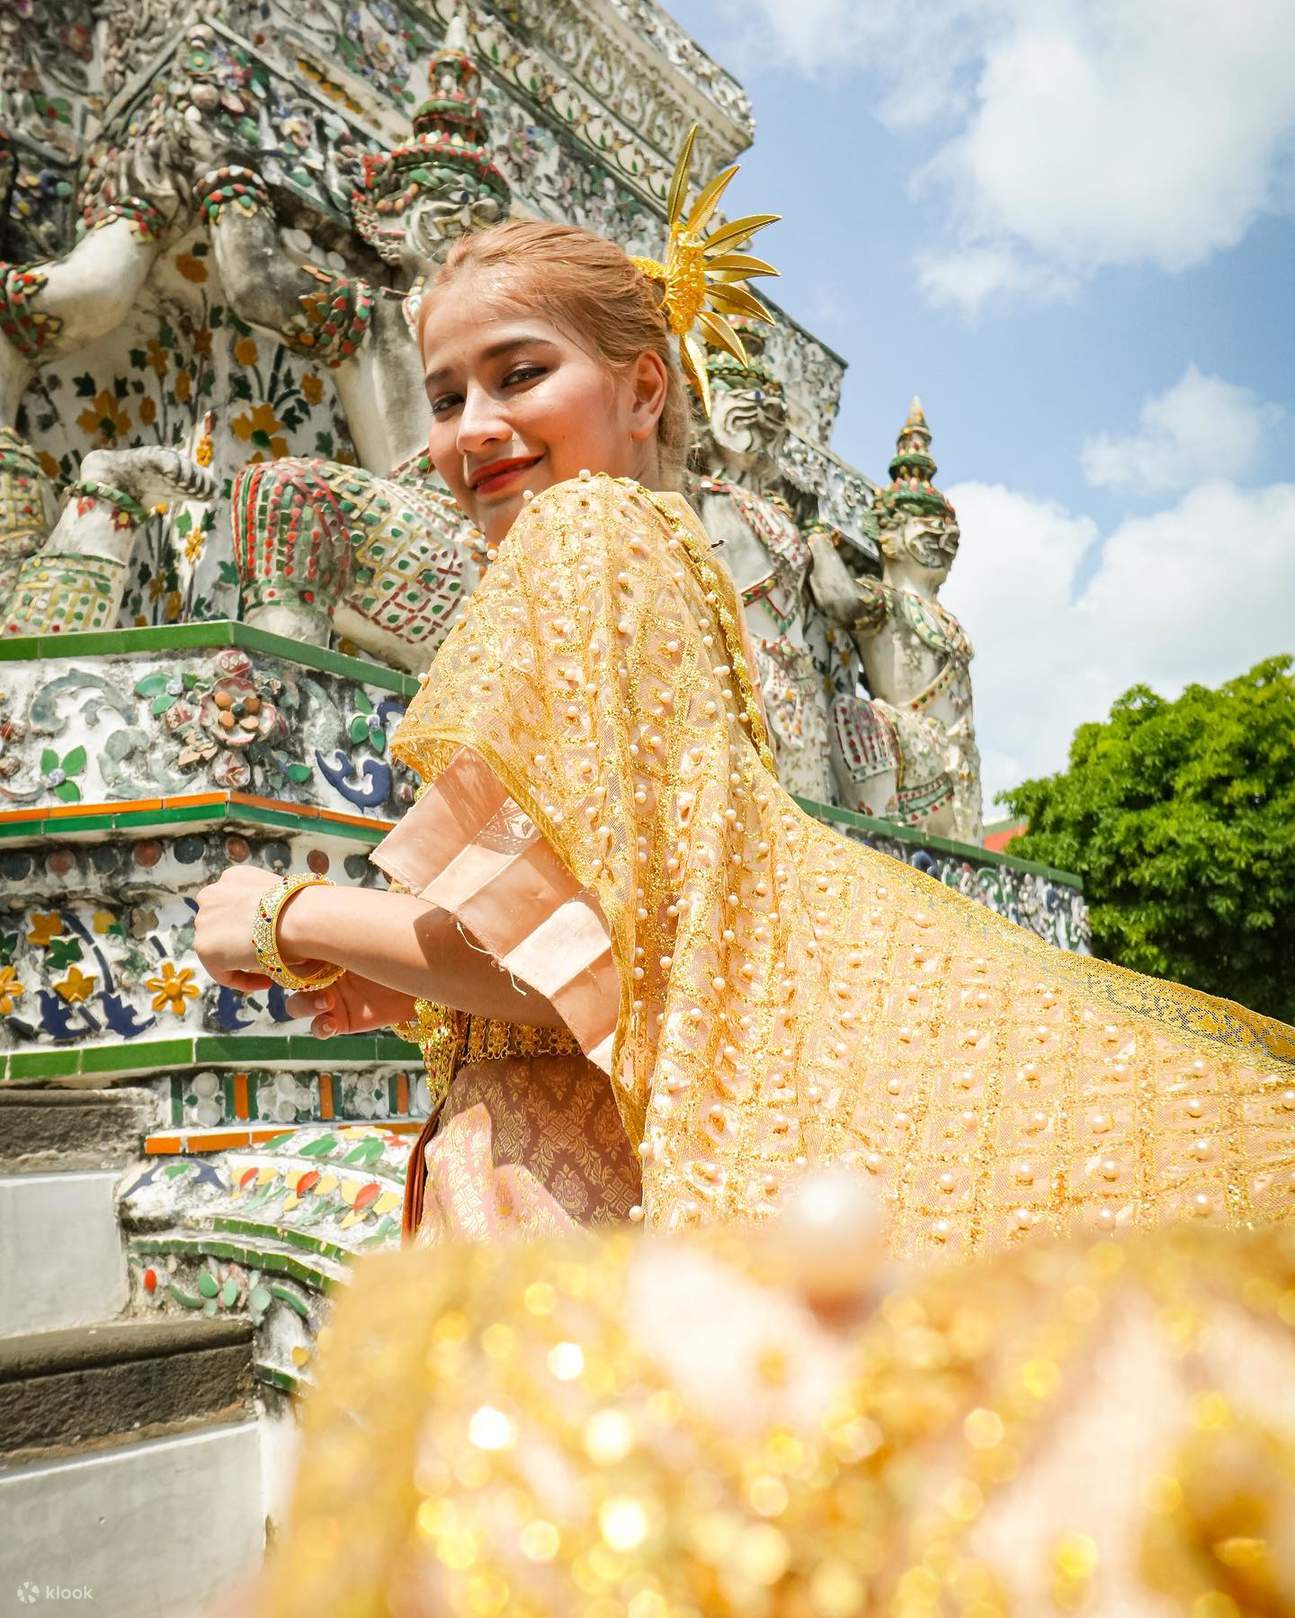 穿典型的泰国礼服的泰国妇女 库存照片. 图片 包括有 成人, 种族, 魅力, 历史记录, 服装, 表面, 文化 - 36112604